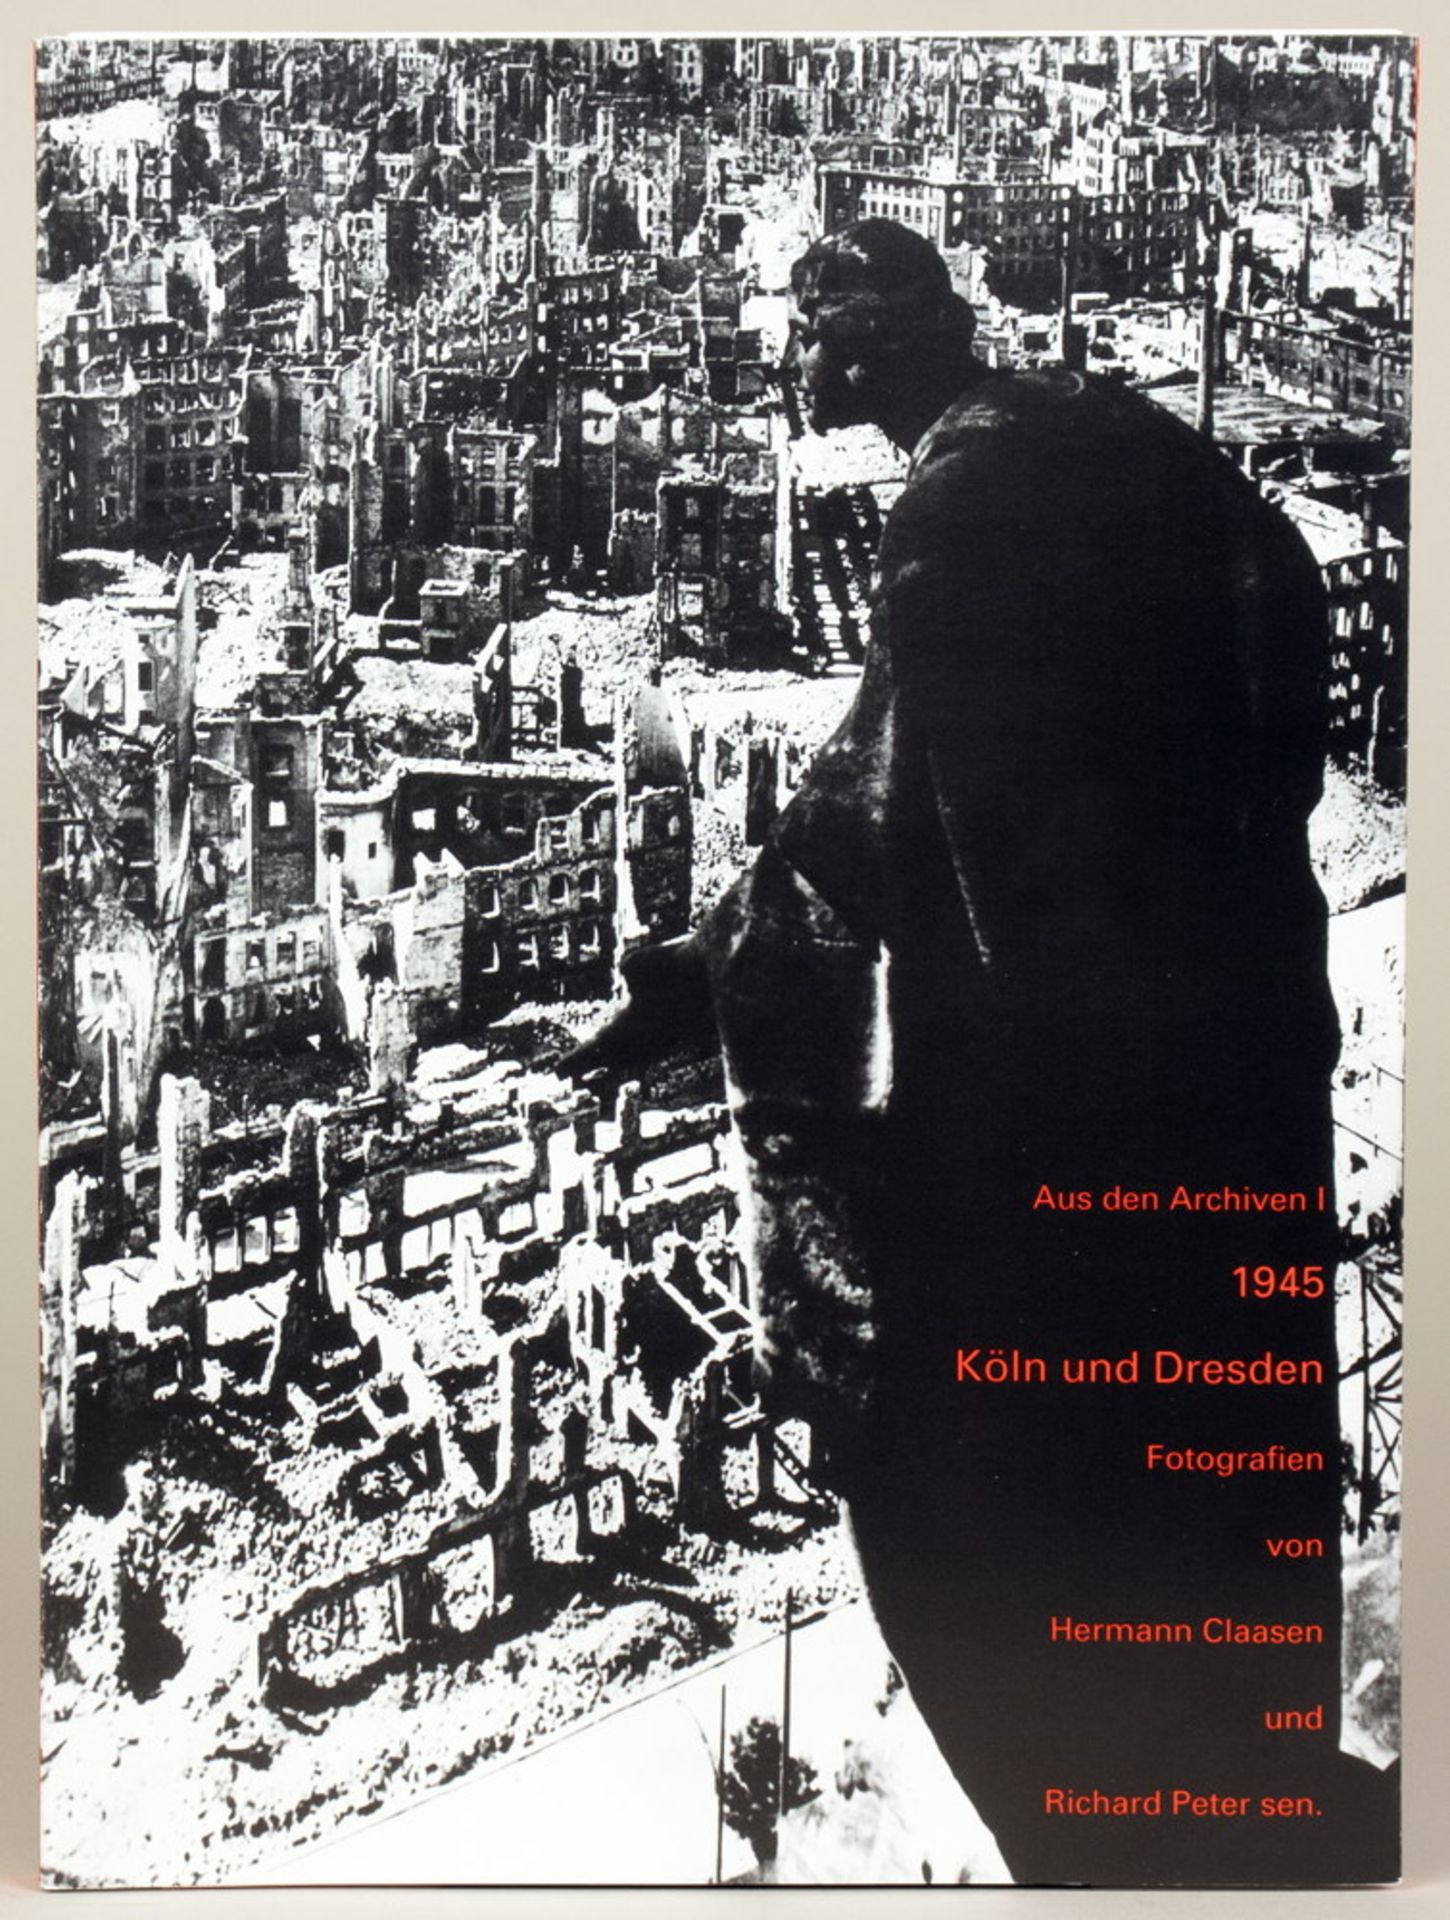 Fotografie - Aus den Archiven I: 1945 - Köln und Dresden. - Image 7 of 7